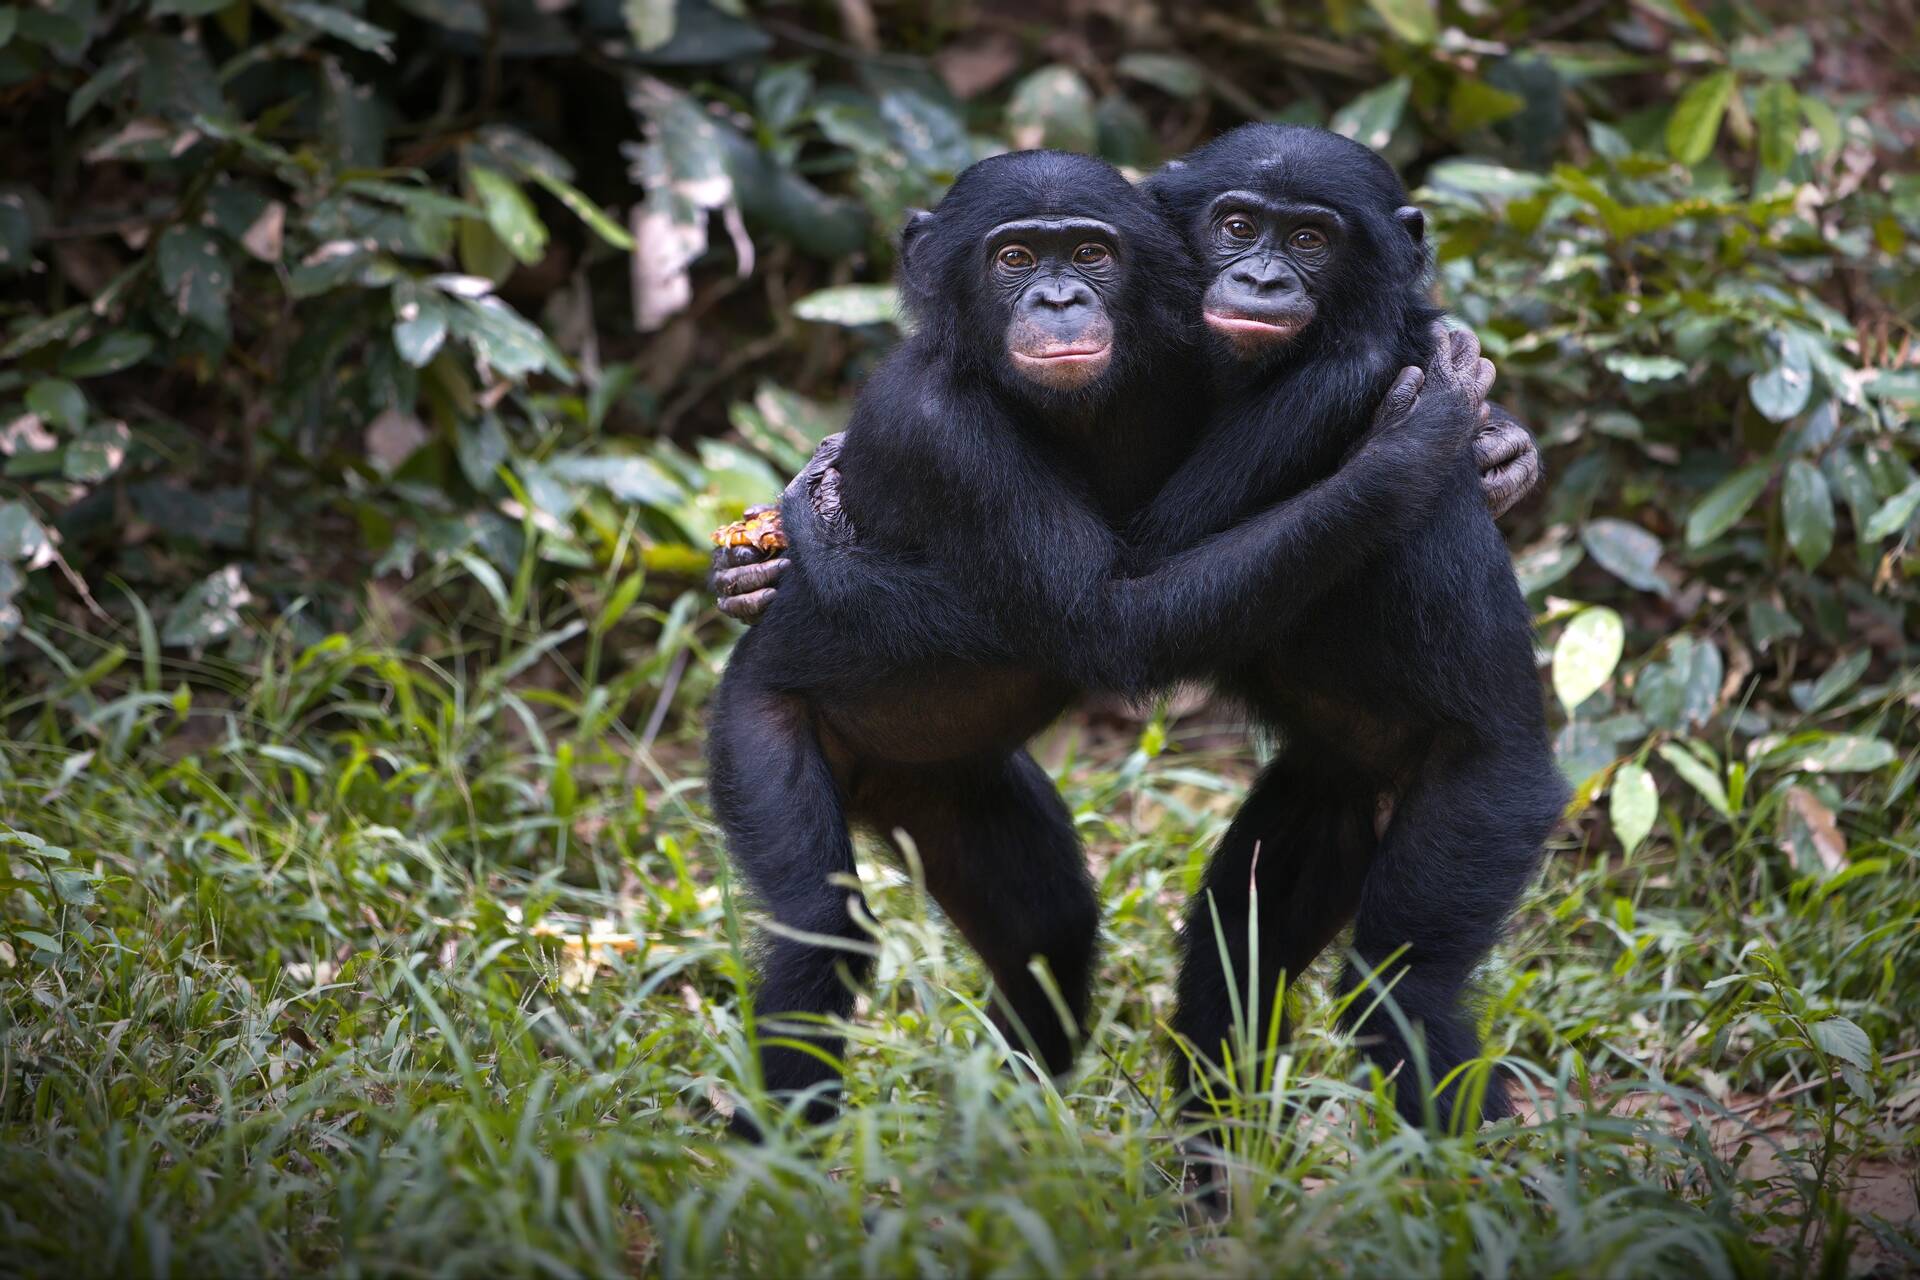 Majmok: egyes tudósok szerint a Homo Sapiens kifejezés nem megfelelő, és az embereket át kell sorolni a Pan nemzetségbe, ami megegyezik a közönséges csimpánzokkal és a bonobo-val.